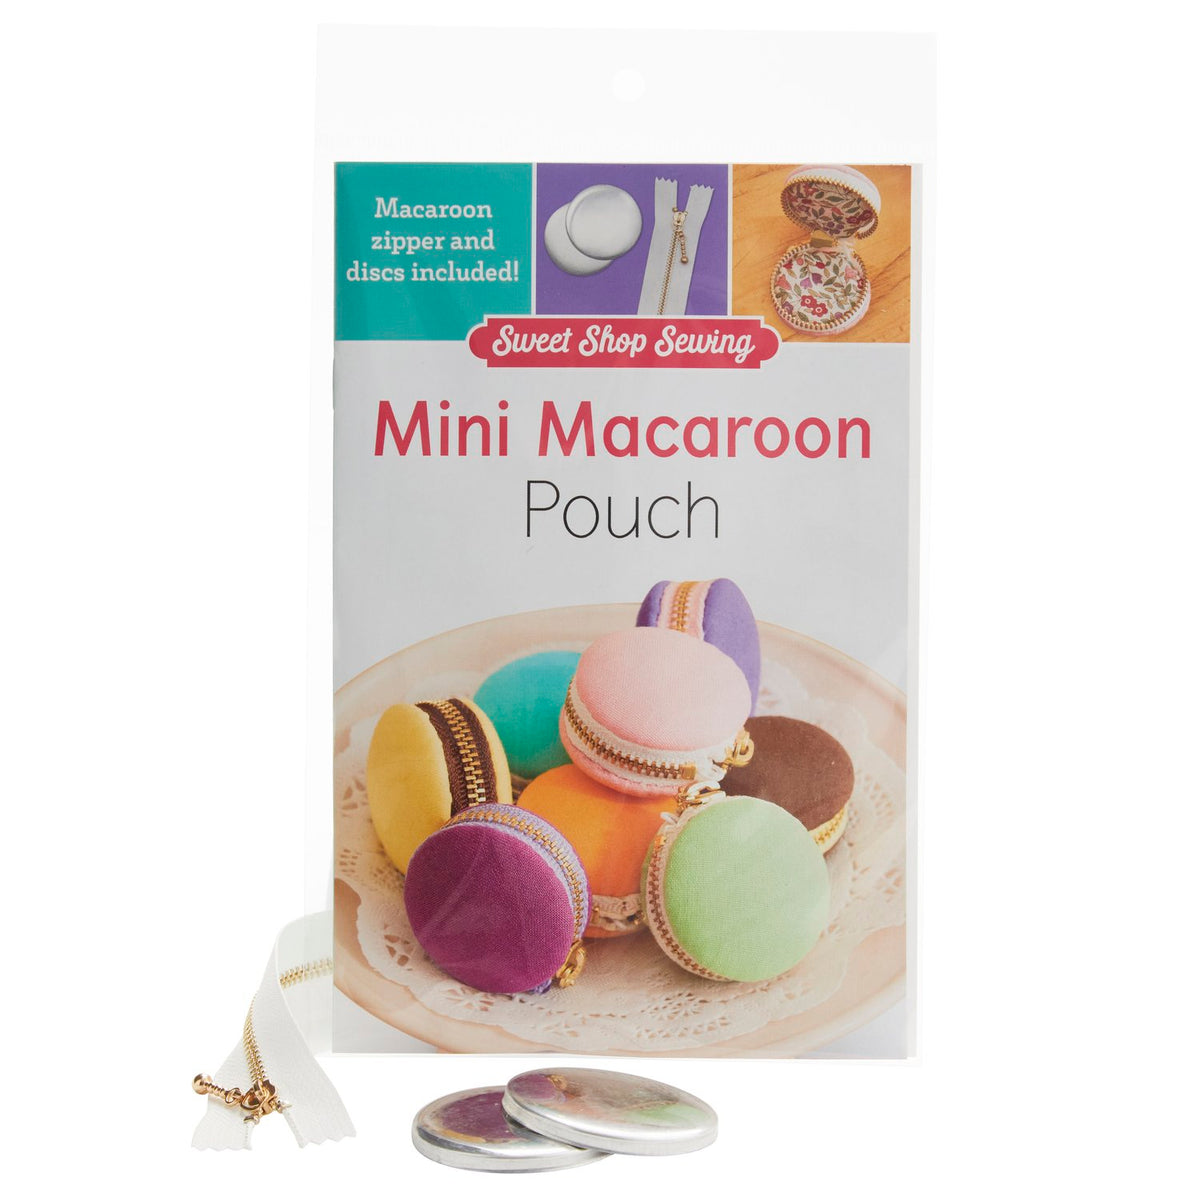 Mini Macaron Pouch